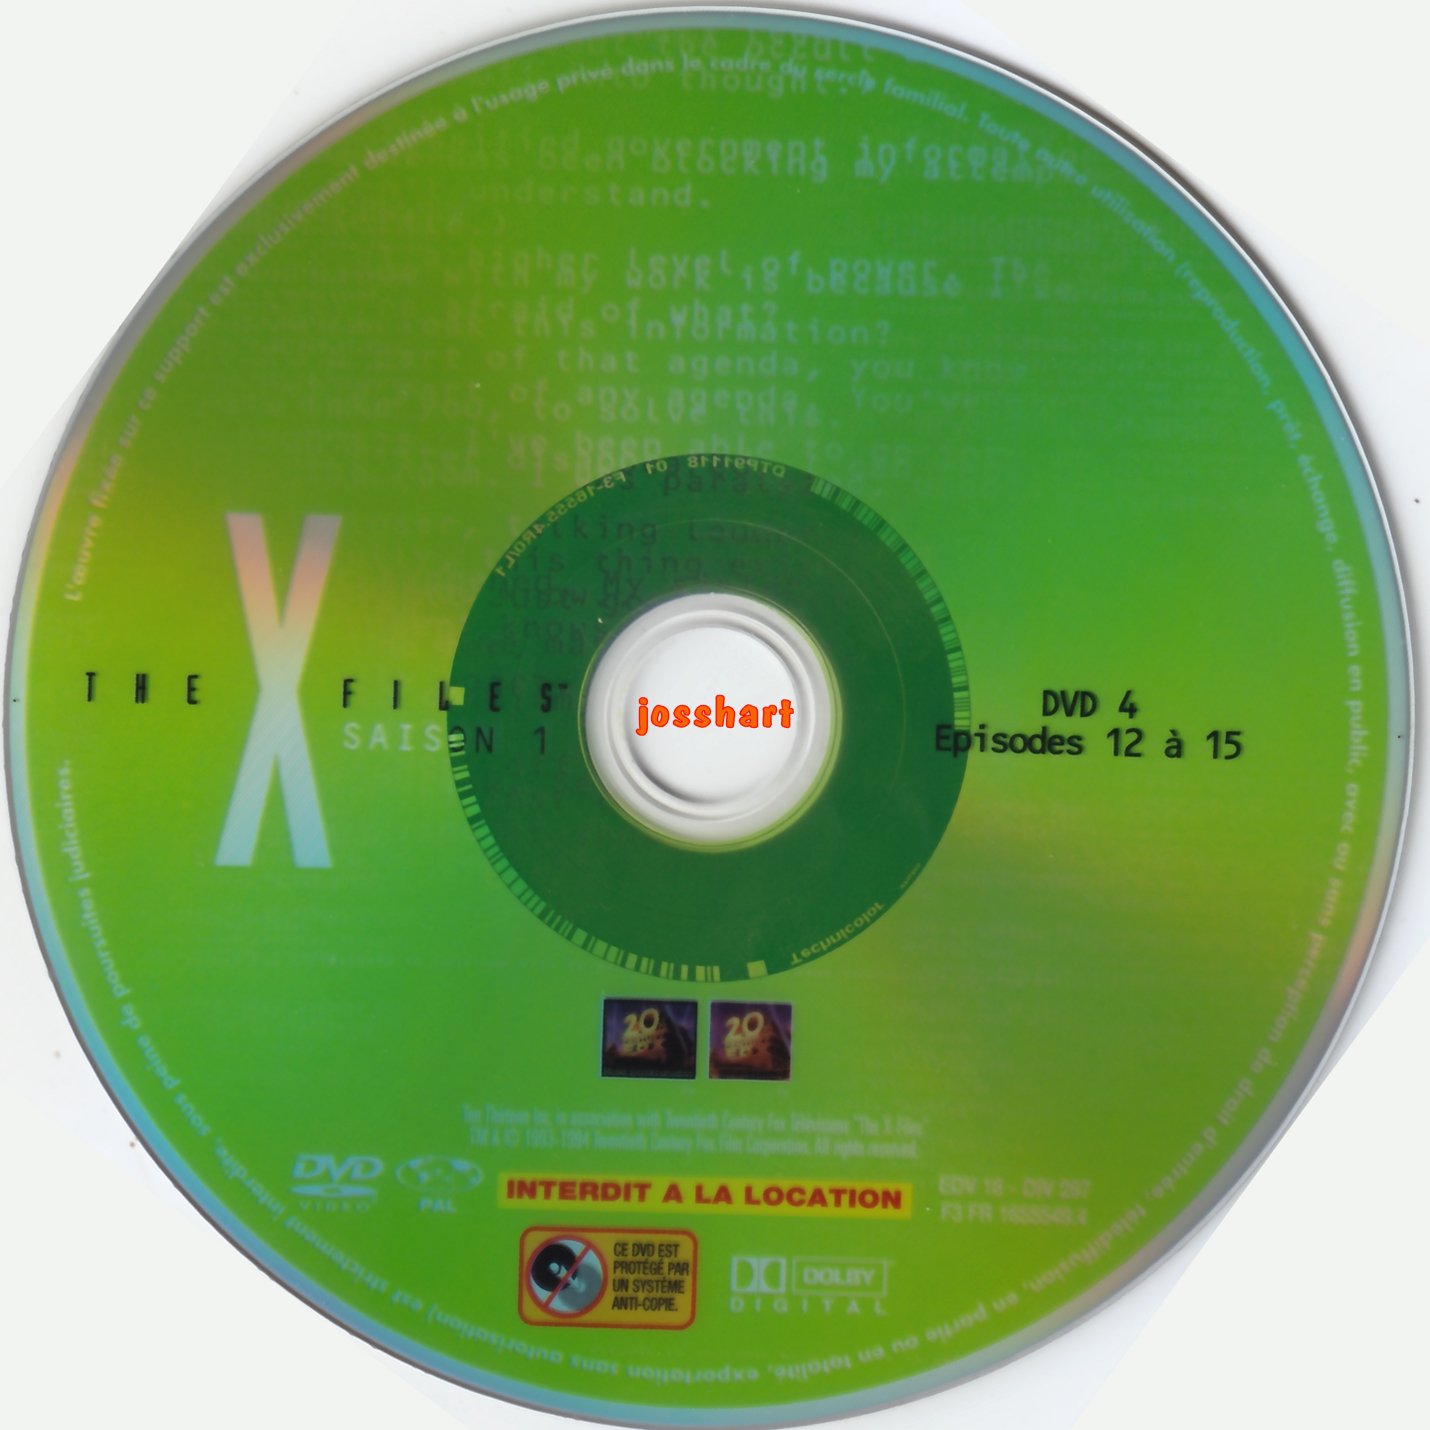 The X Files Saison 1 DVD 4 v2